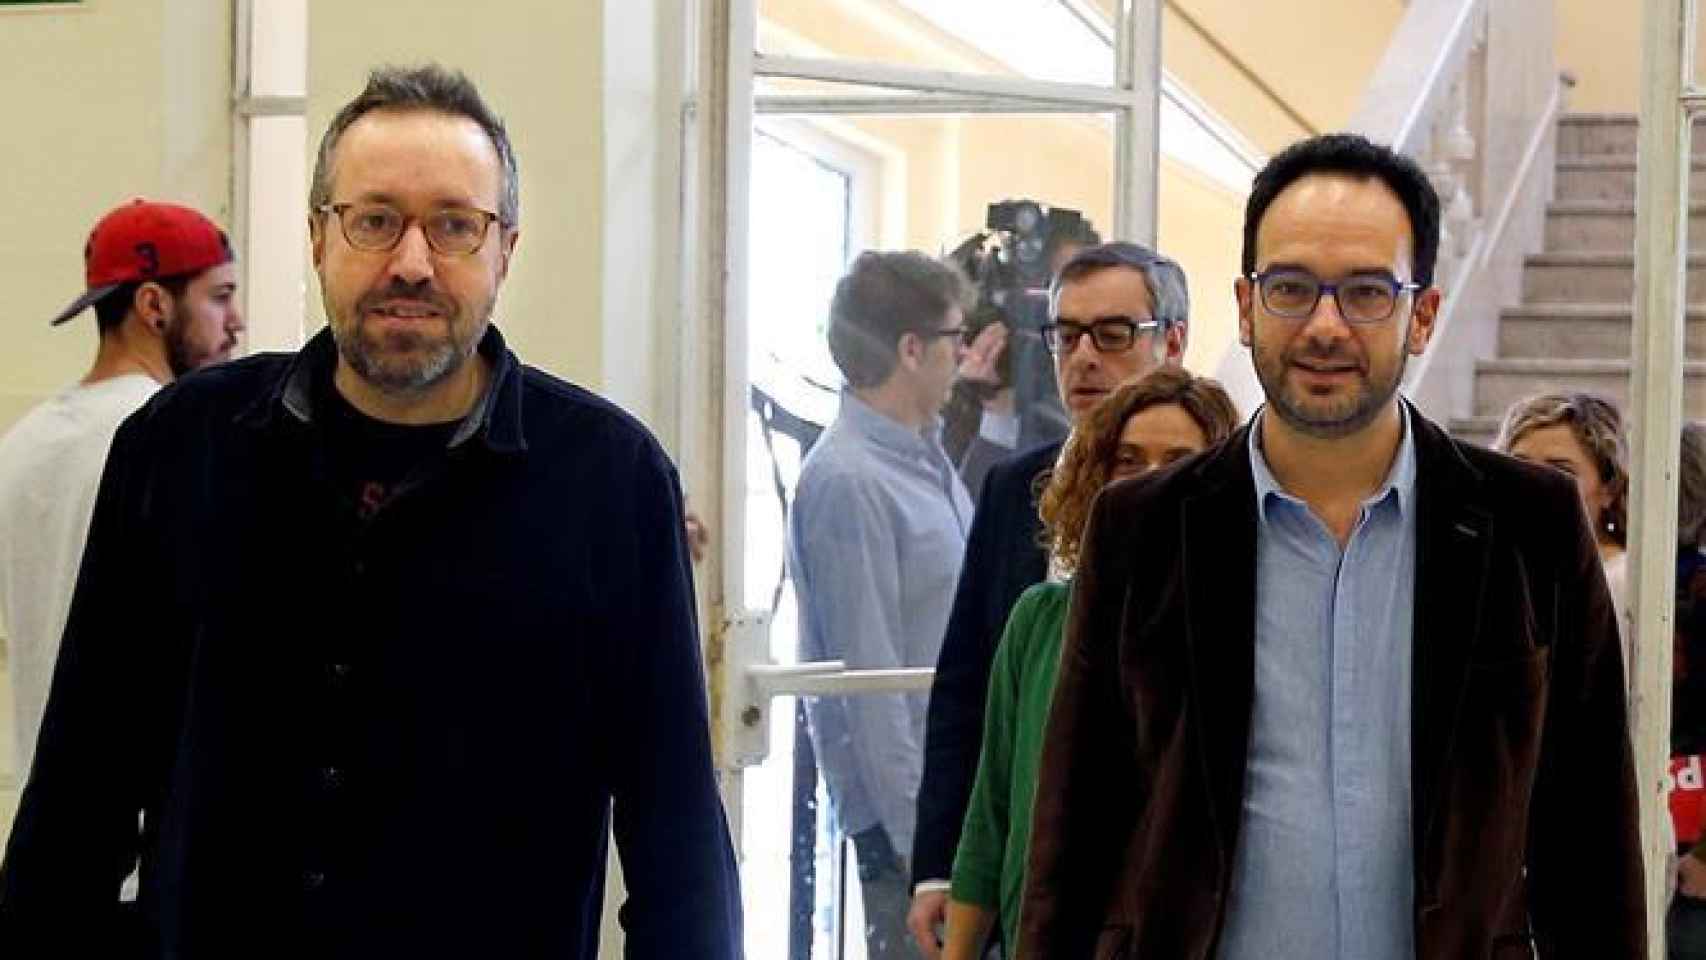 Girauta y Hernando se dirigen a una rueda de prensa en el Círculo de Bellas Artes.